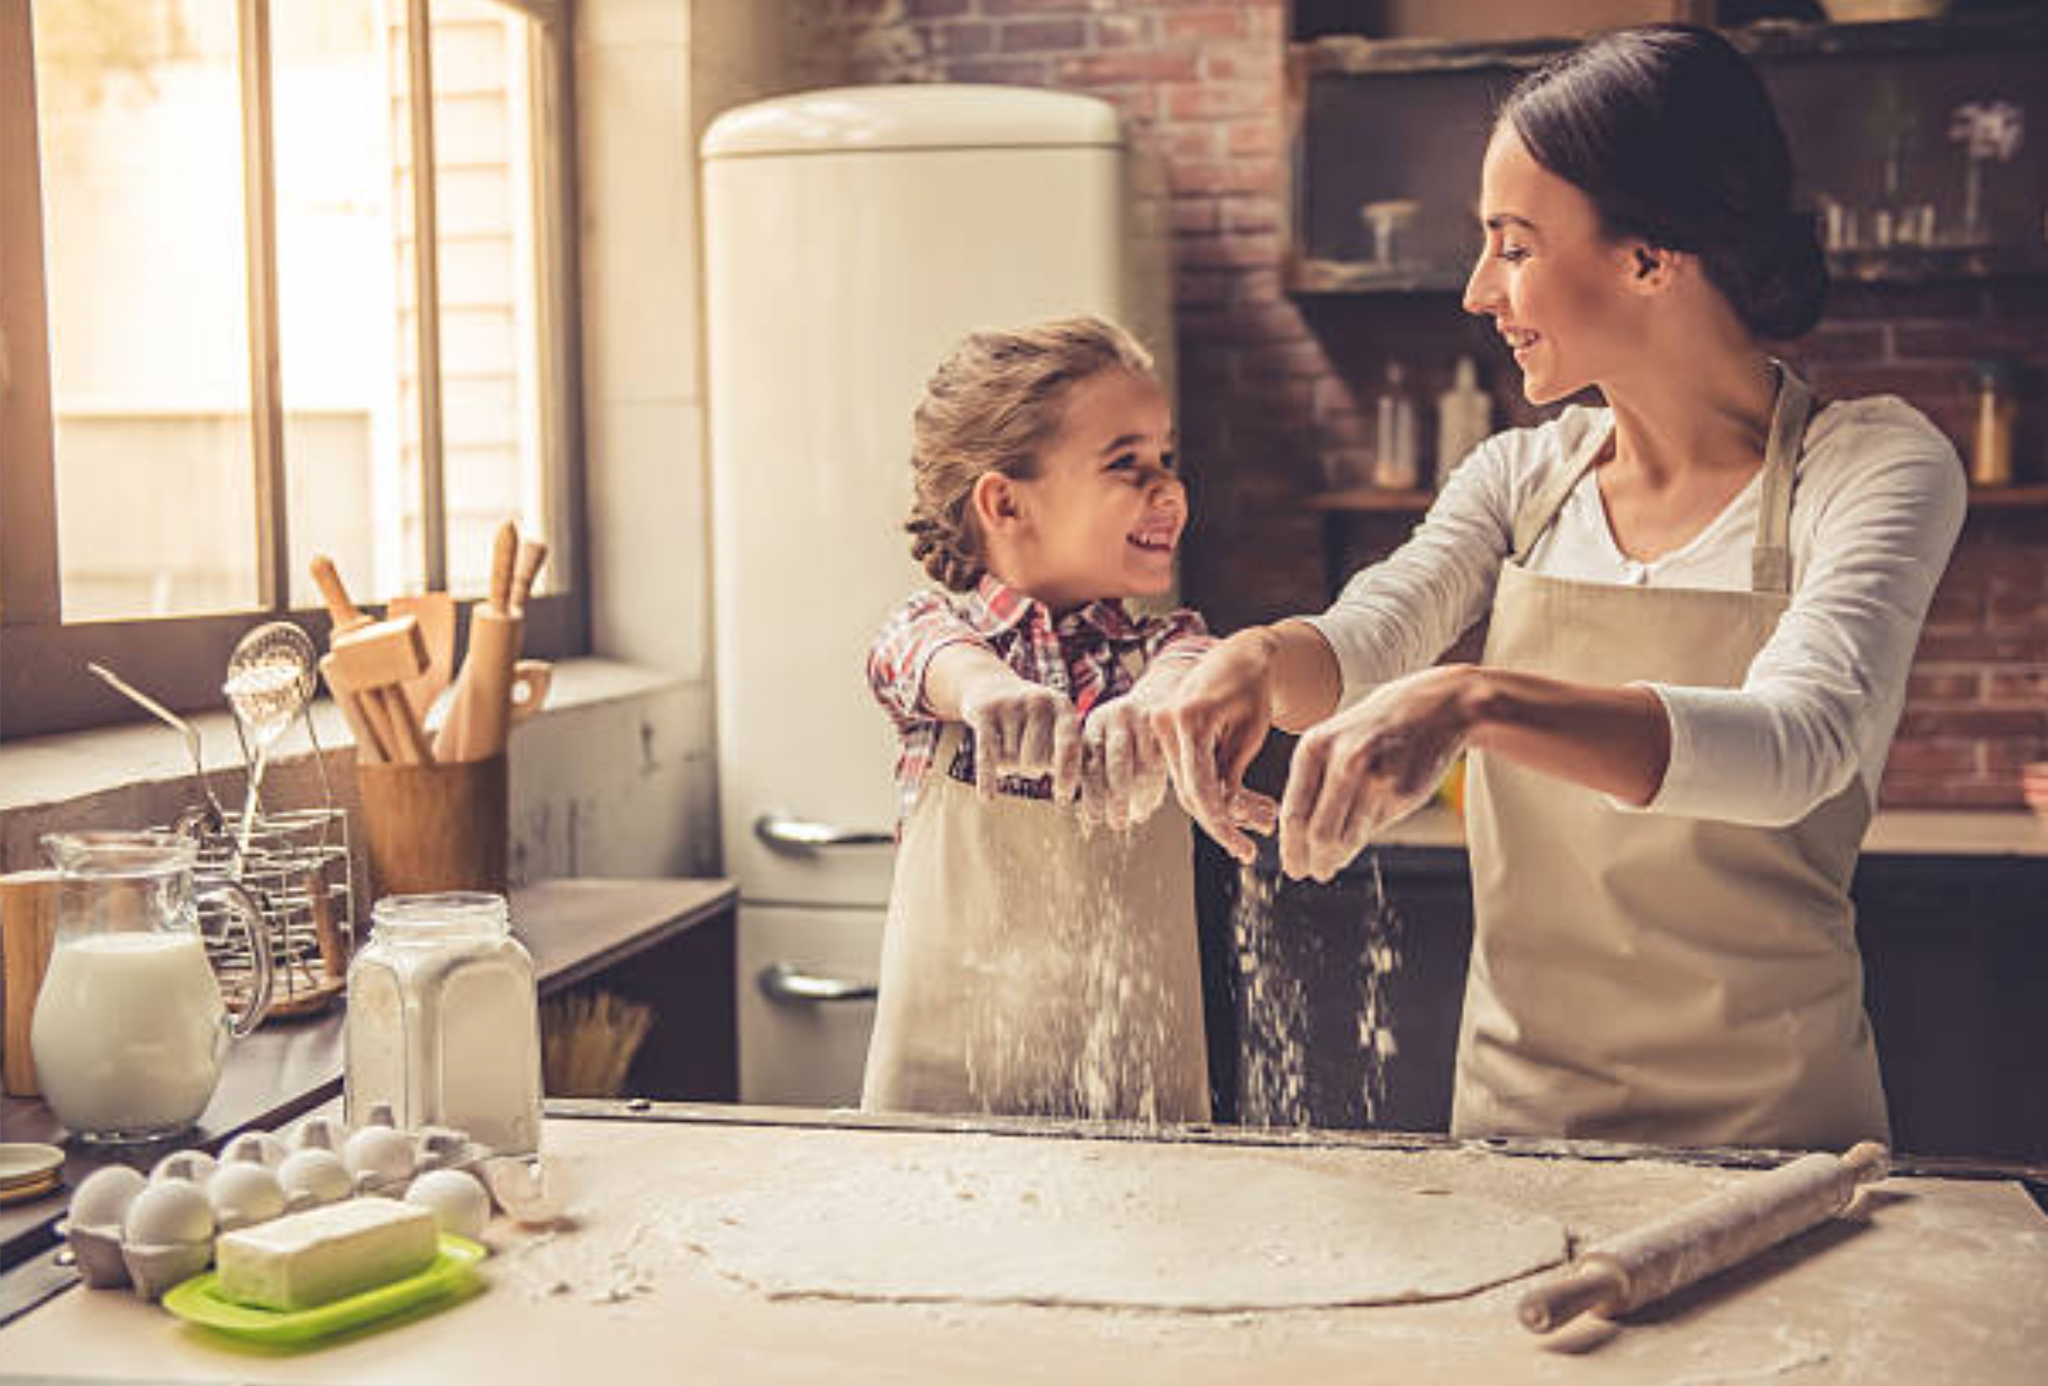 Comment adopter des habitudes écologiques pour le ménage, la cuisine et la vaisselle à la maison ?